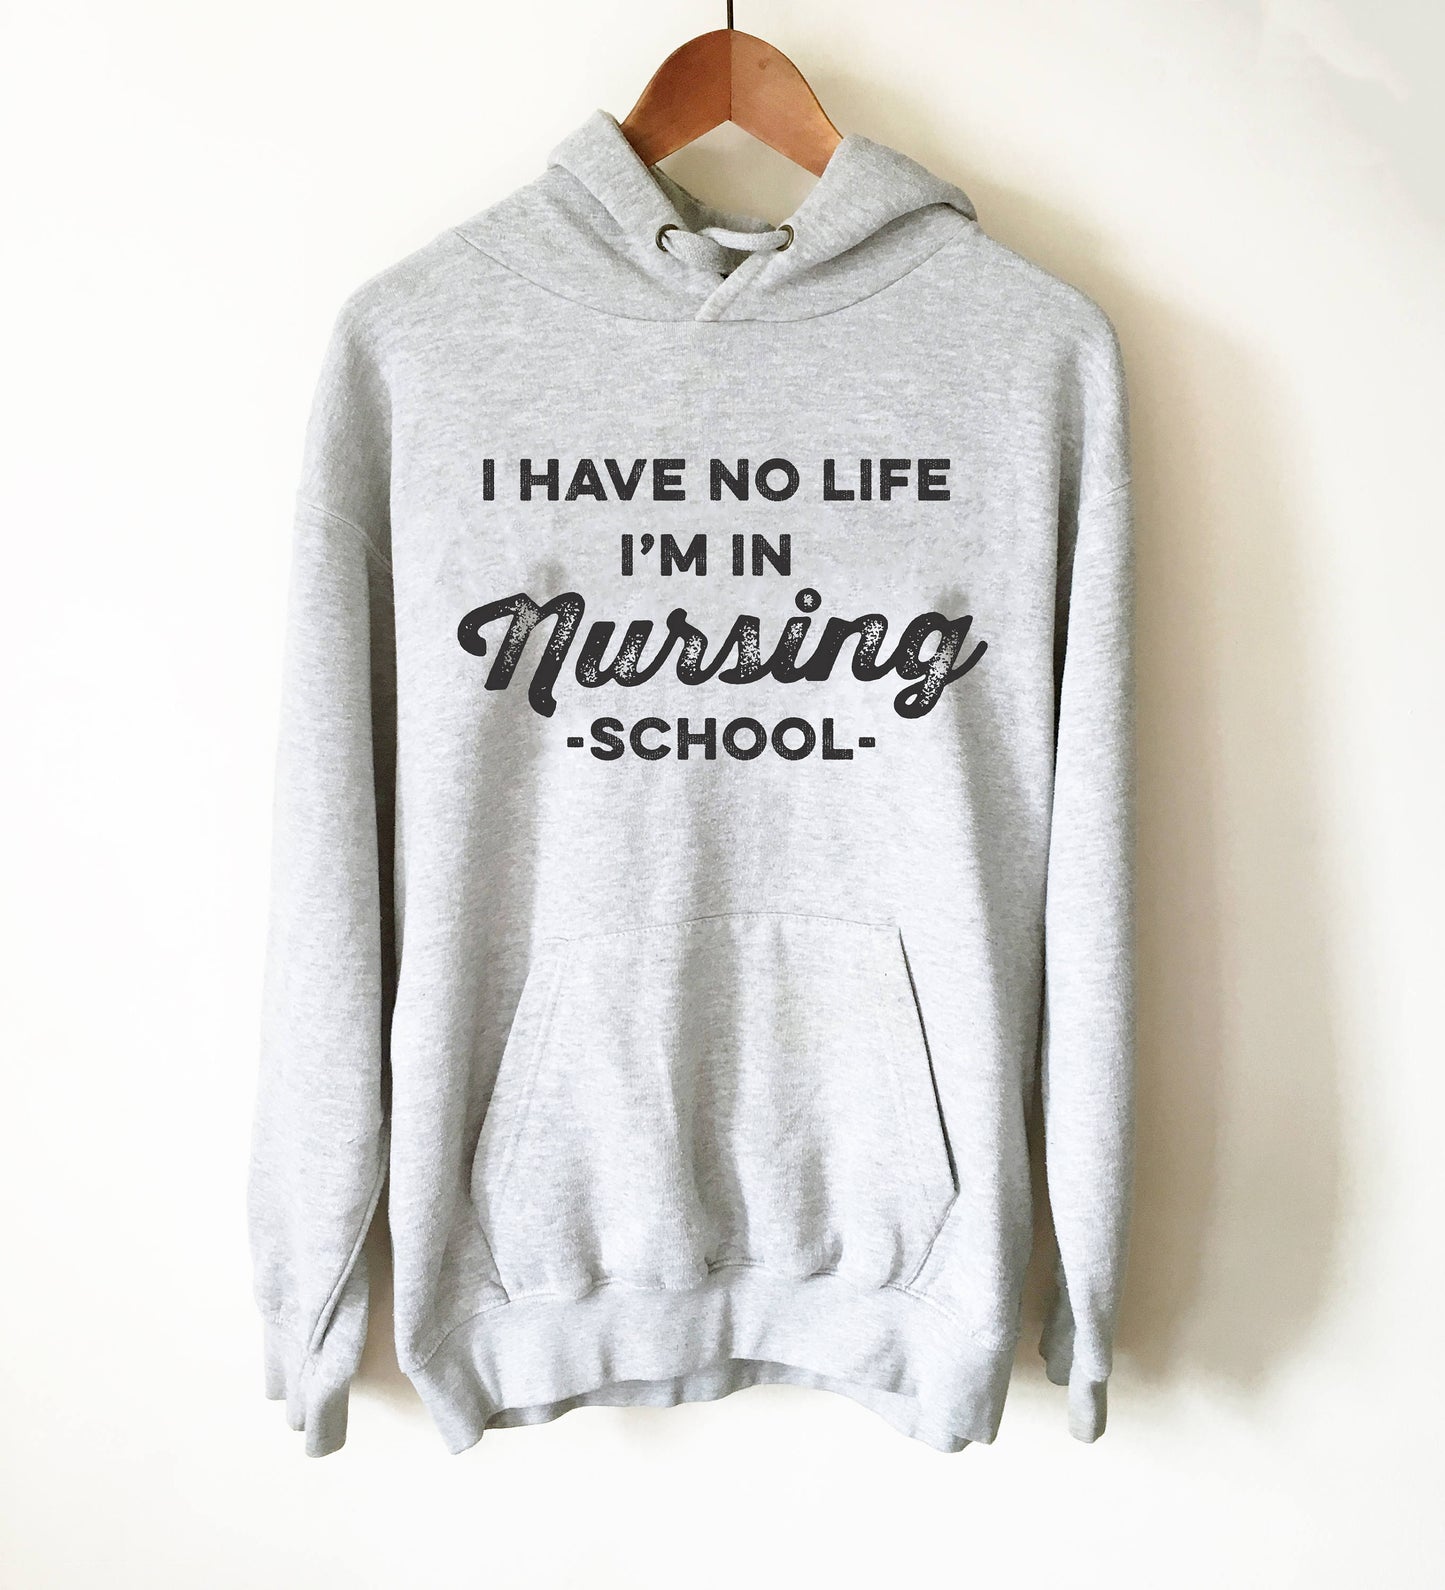 I Have No Life I'm In Nursing School Hoodie - Nursing hoodie, Nurse shirt, Nursing student, Registered nurse, Nurse appreciation